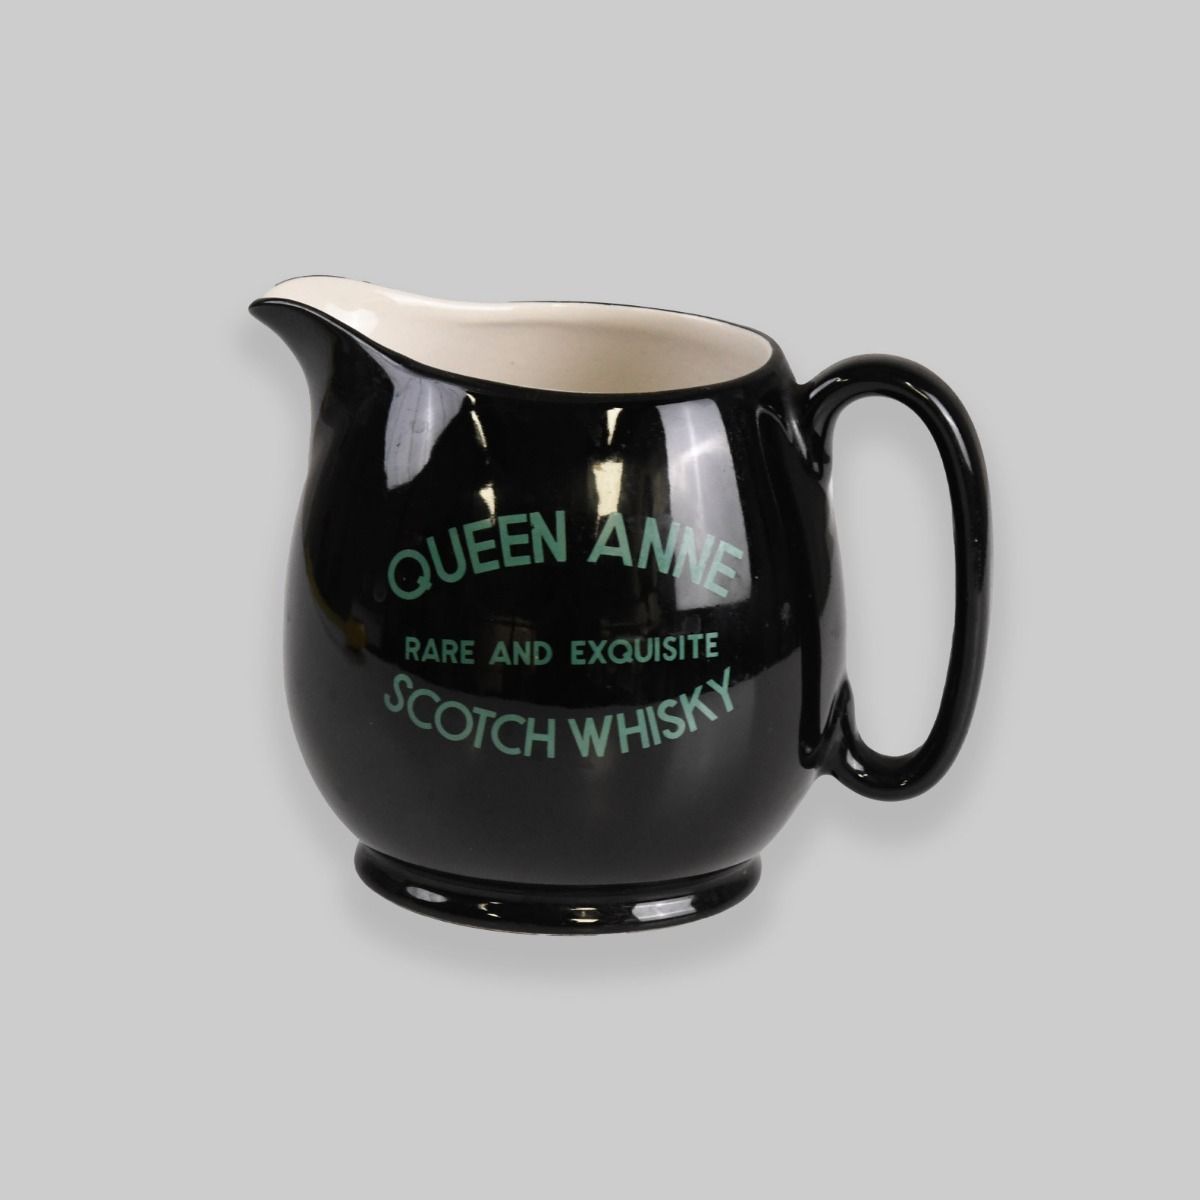 Vintage Queen Anne Scotch Whisky Pitcher